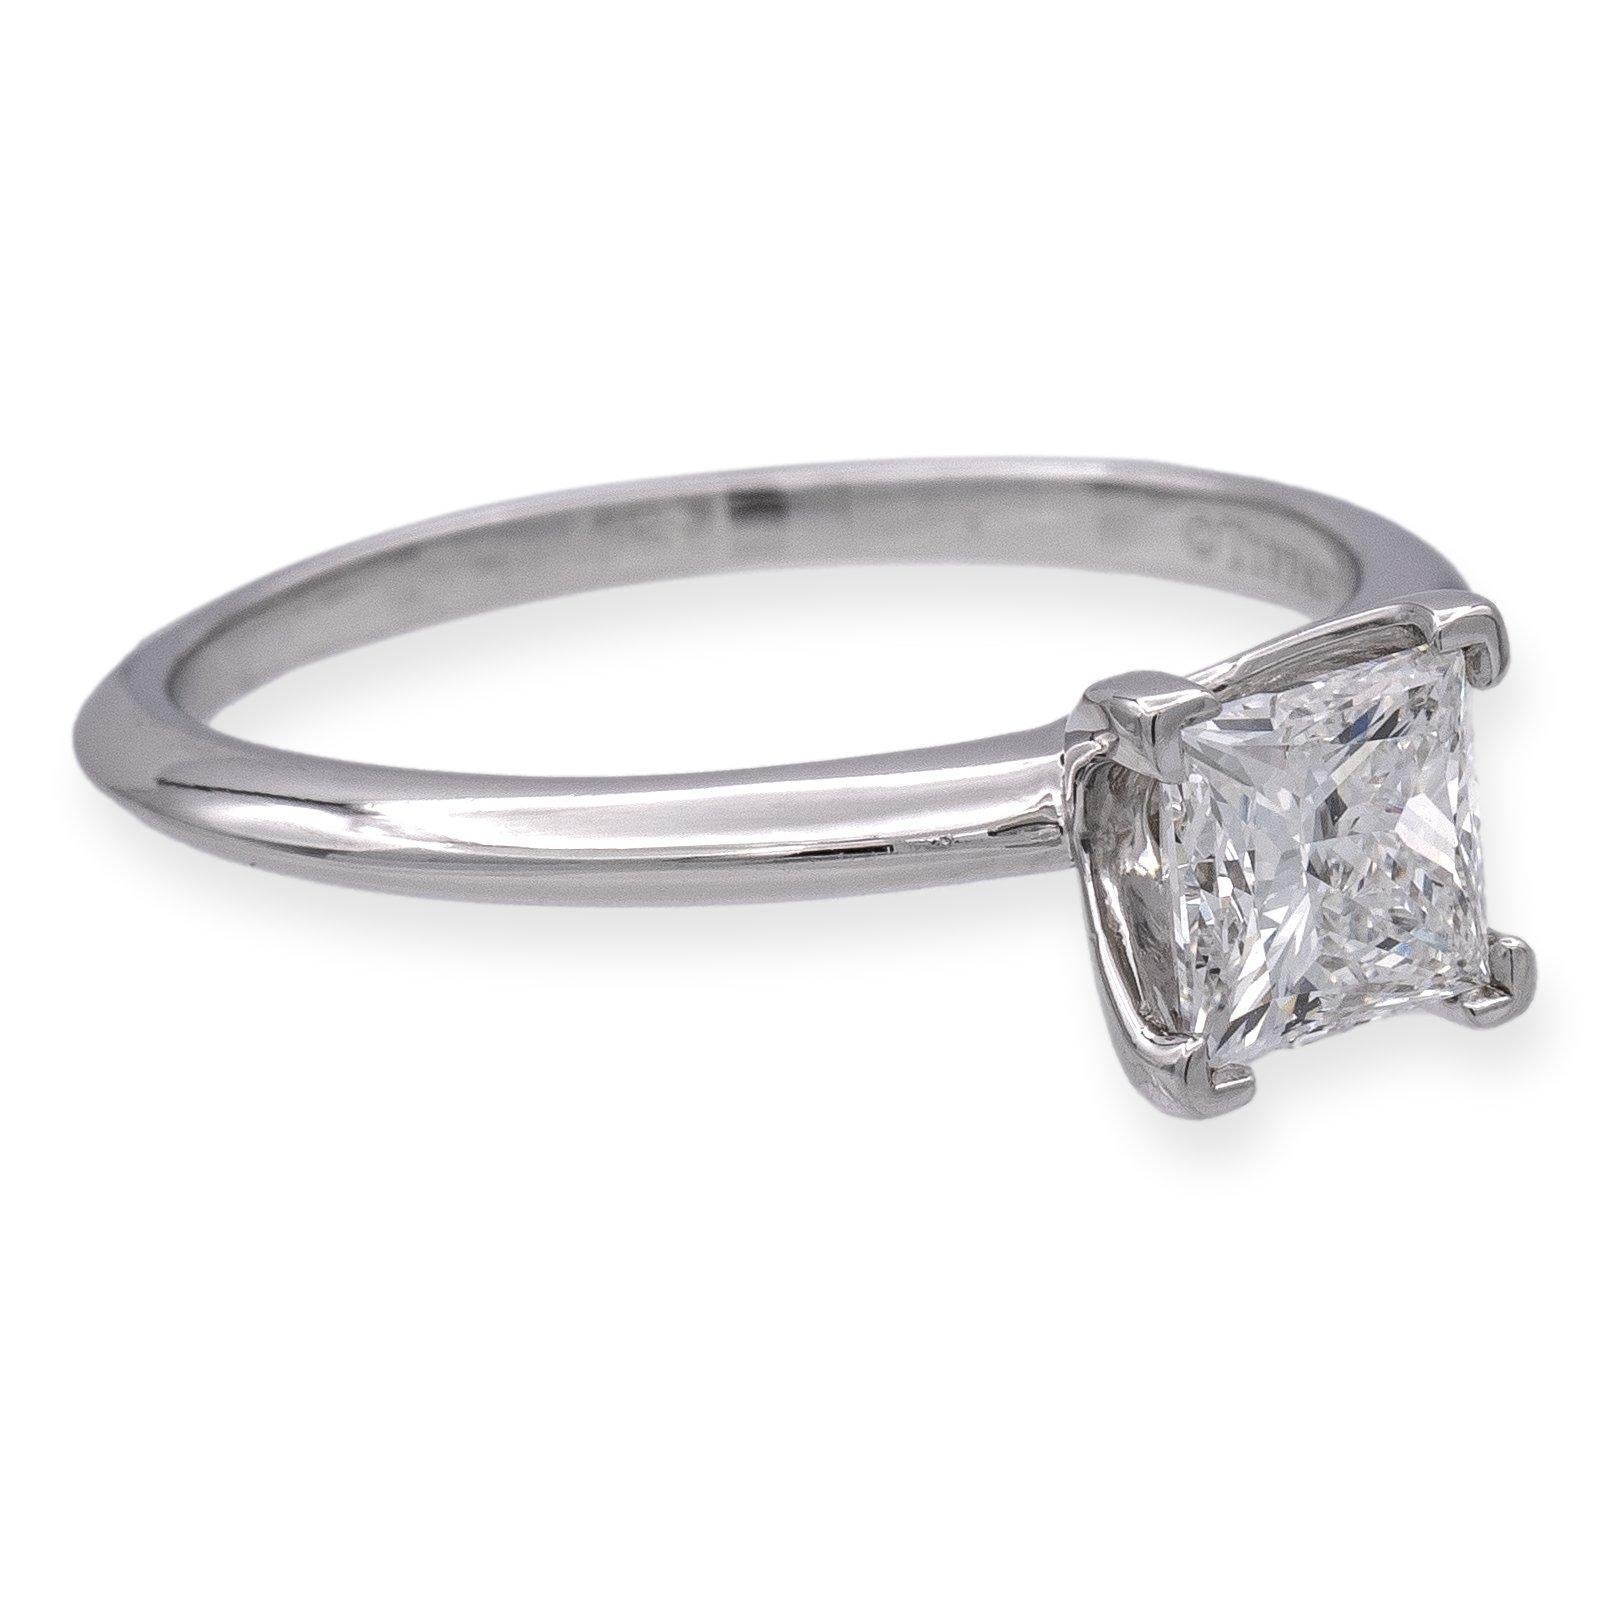 Tiffany & Co. Bague de fiançailles en diamant. Un superbe diamant taille princesse de 1,01 ct, de couleur E et de pureté VS1, occupe le devant de la scène dans une monture en platine. Chaque détail respire la perfection, de la pierre impeccable à